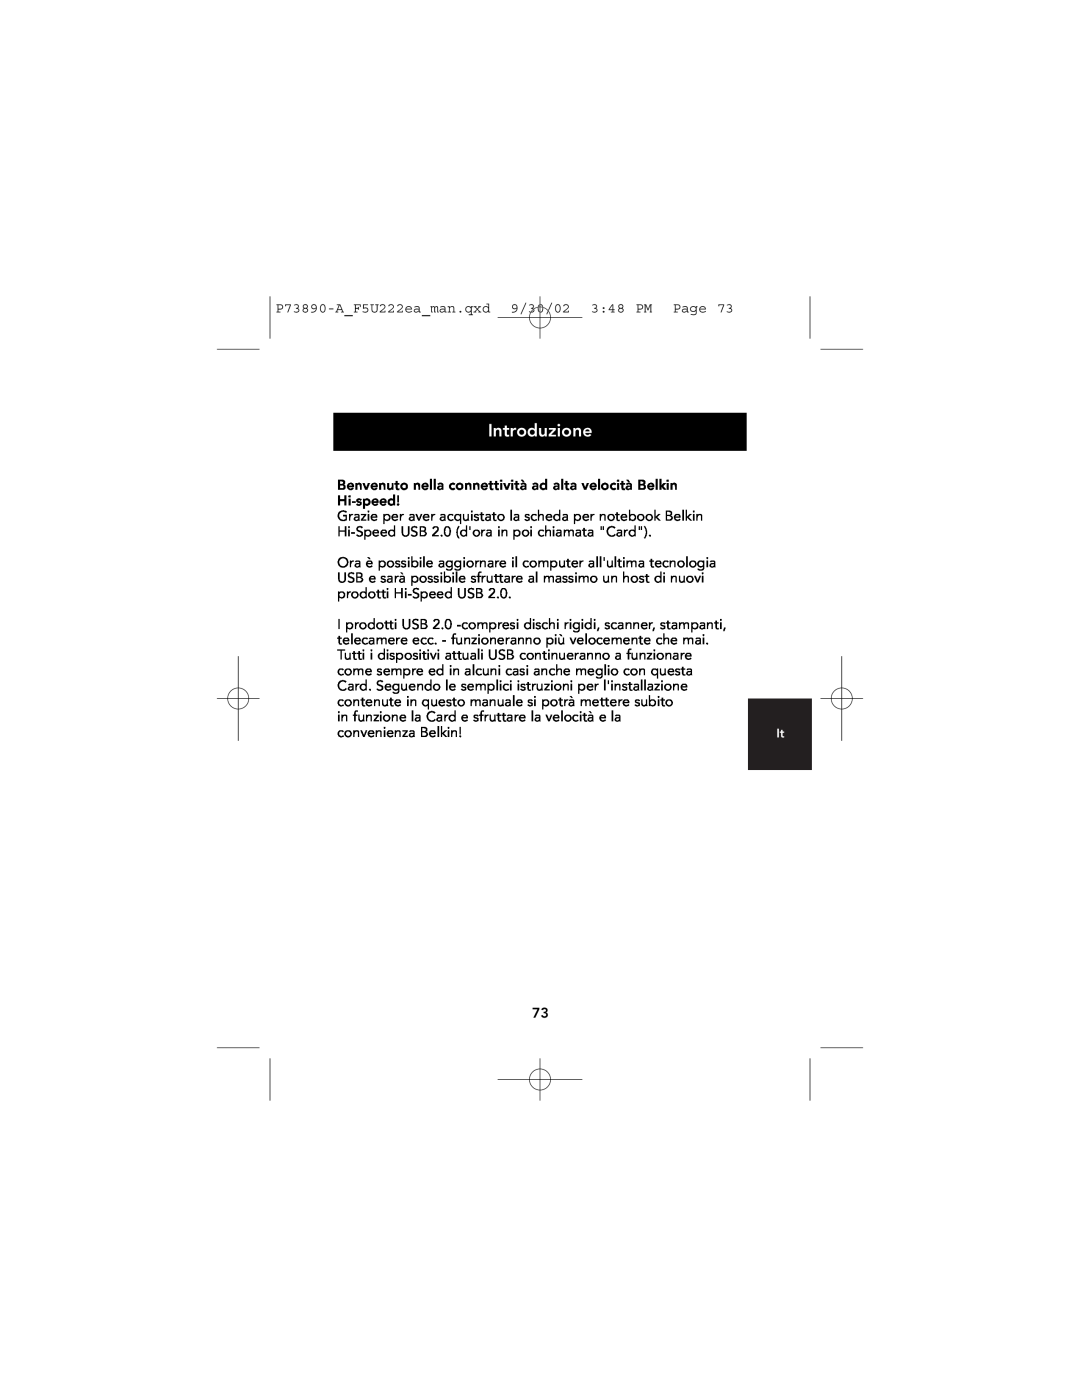 Belkin P73890EA-A manual Introduzione 